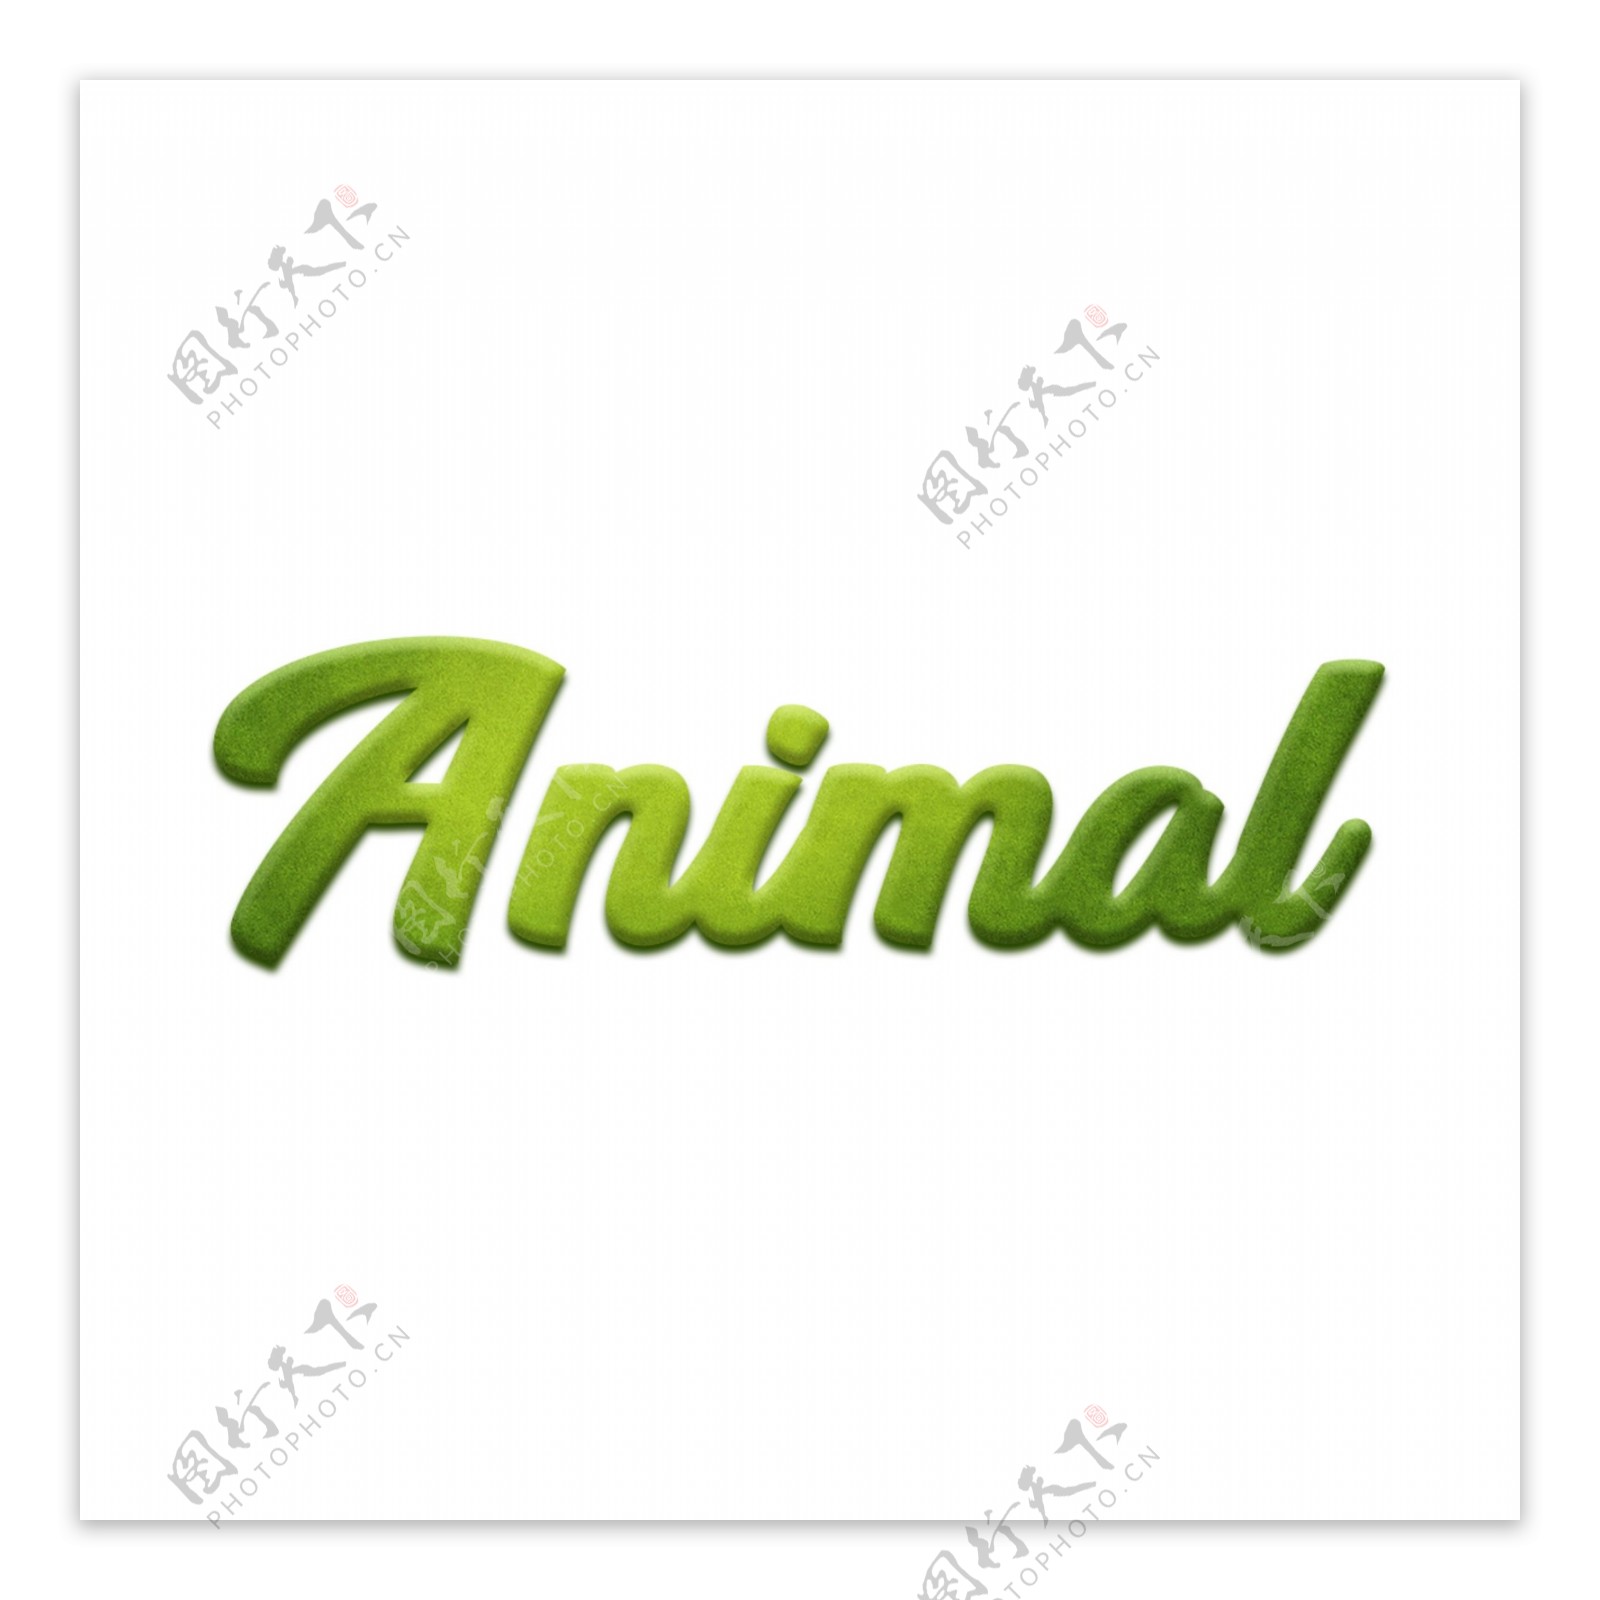 抽象的绿色动物字体